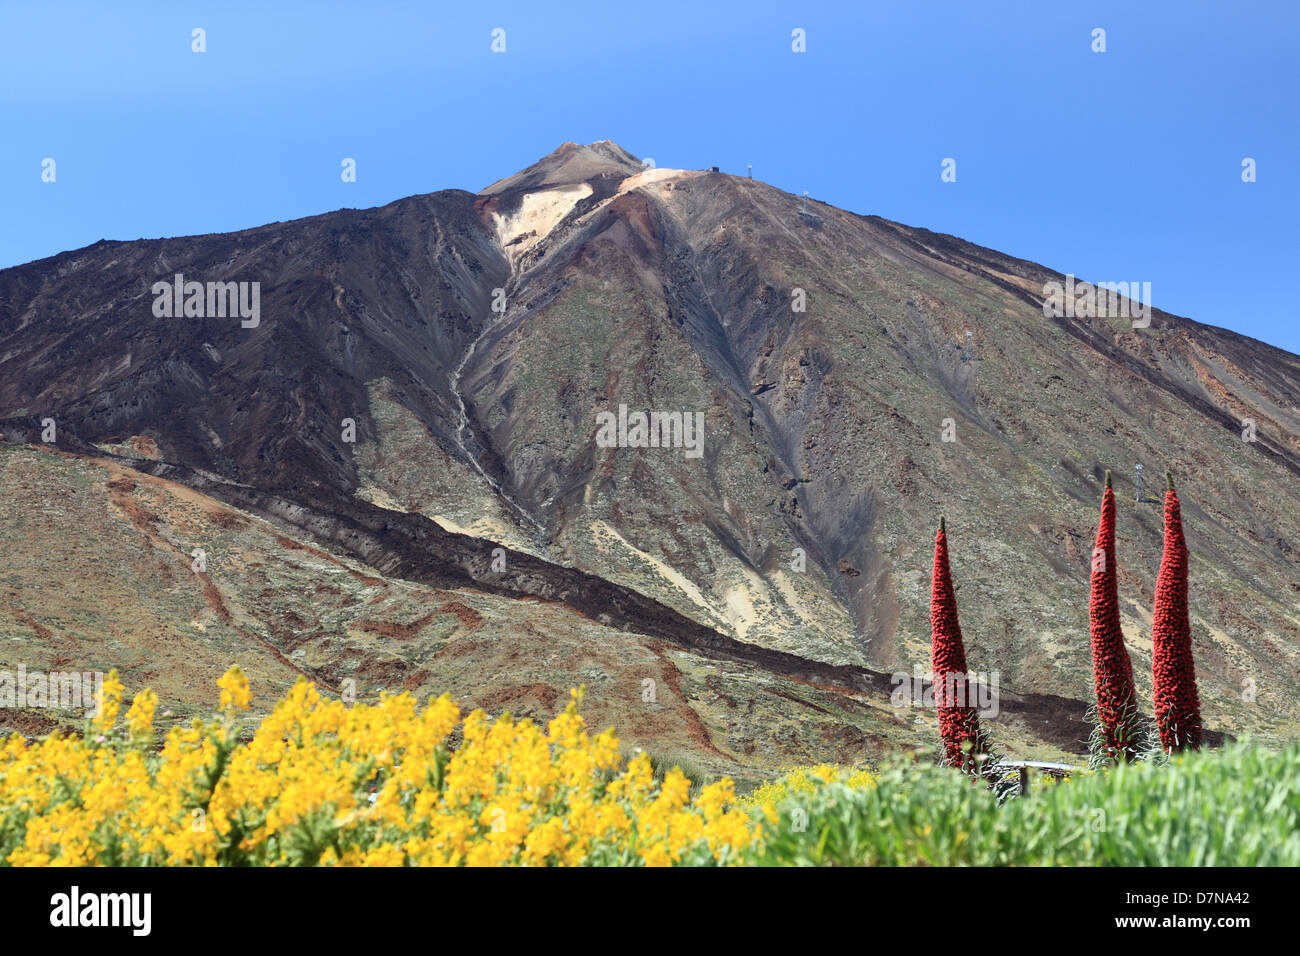 Teneriffa-Berg, Vulkan Mount Teide Pico del Teide und Blumen Landschaft zeigt. Kanarische Inseln, Spanien. Stockfoto